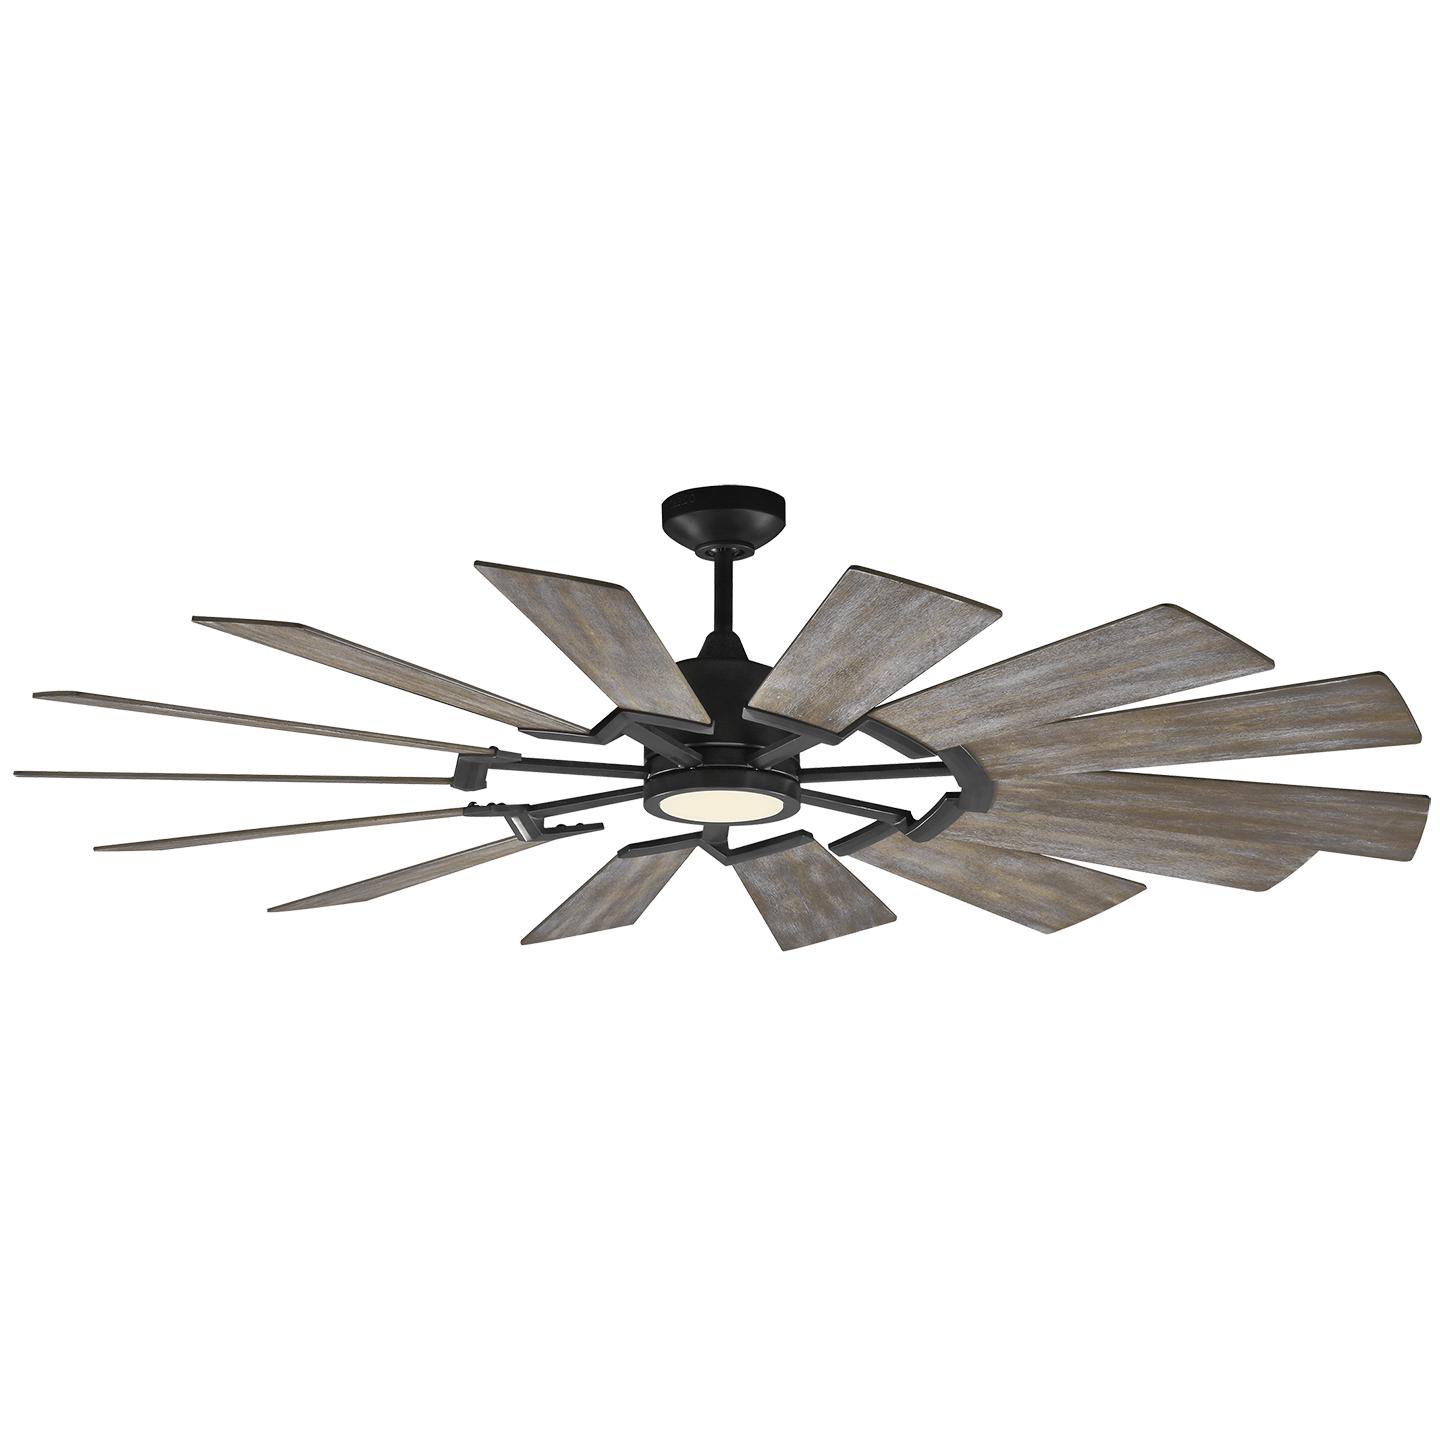 Купить Потолочный вентилятор Prairie 62" LED Ceiling Fan в интернет-магазине roooms.ru